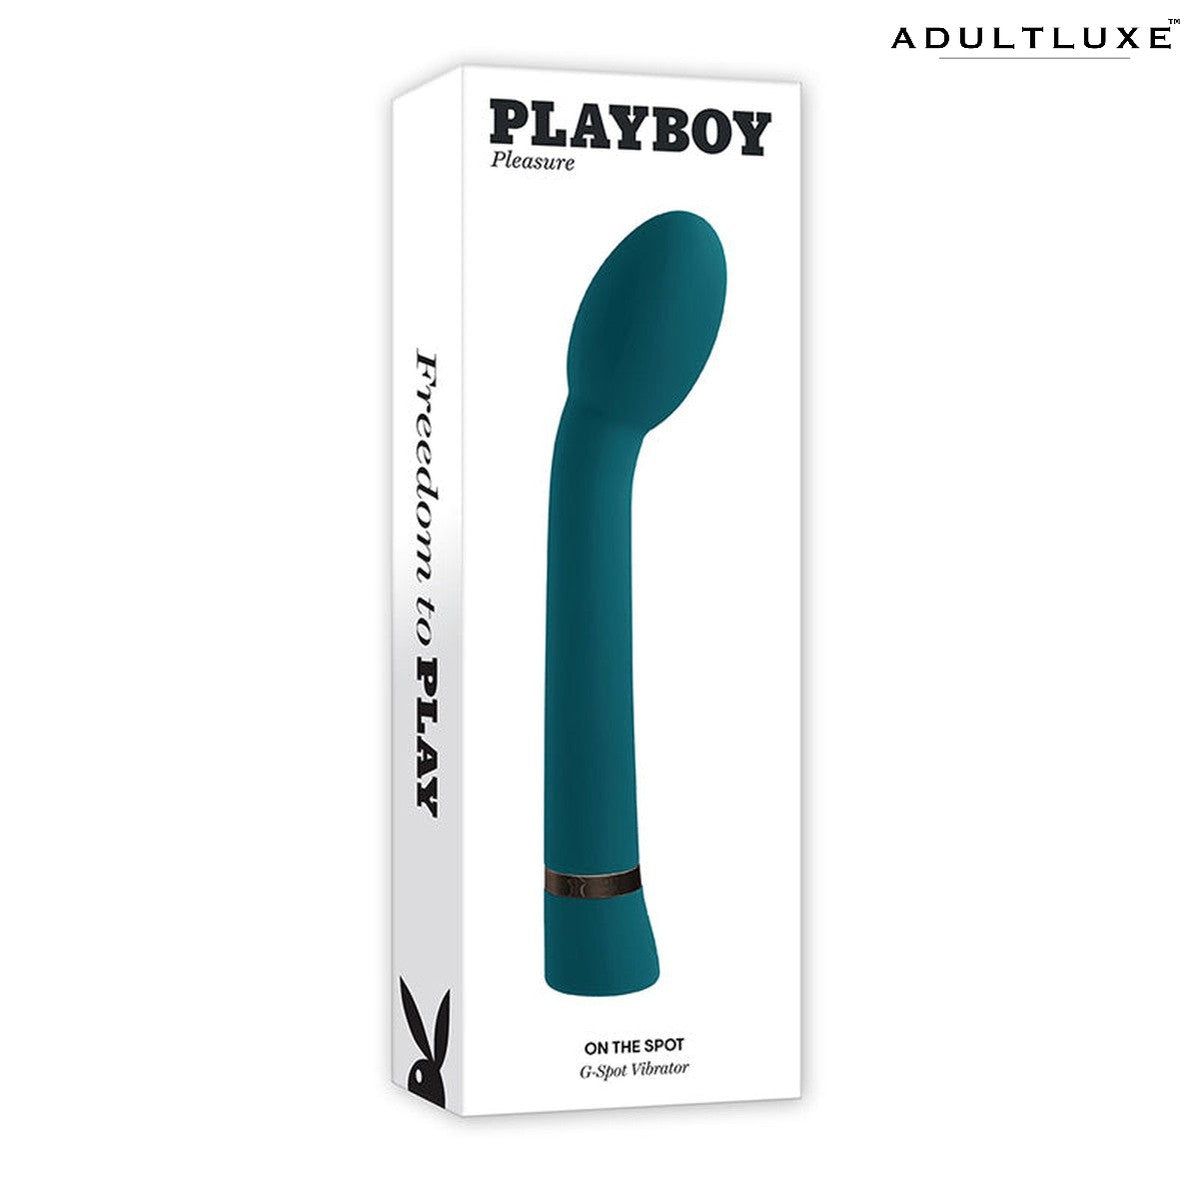 Playboy On The Spot G-Spot Vibrator - AdultLuxe